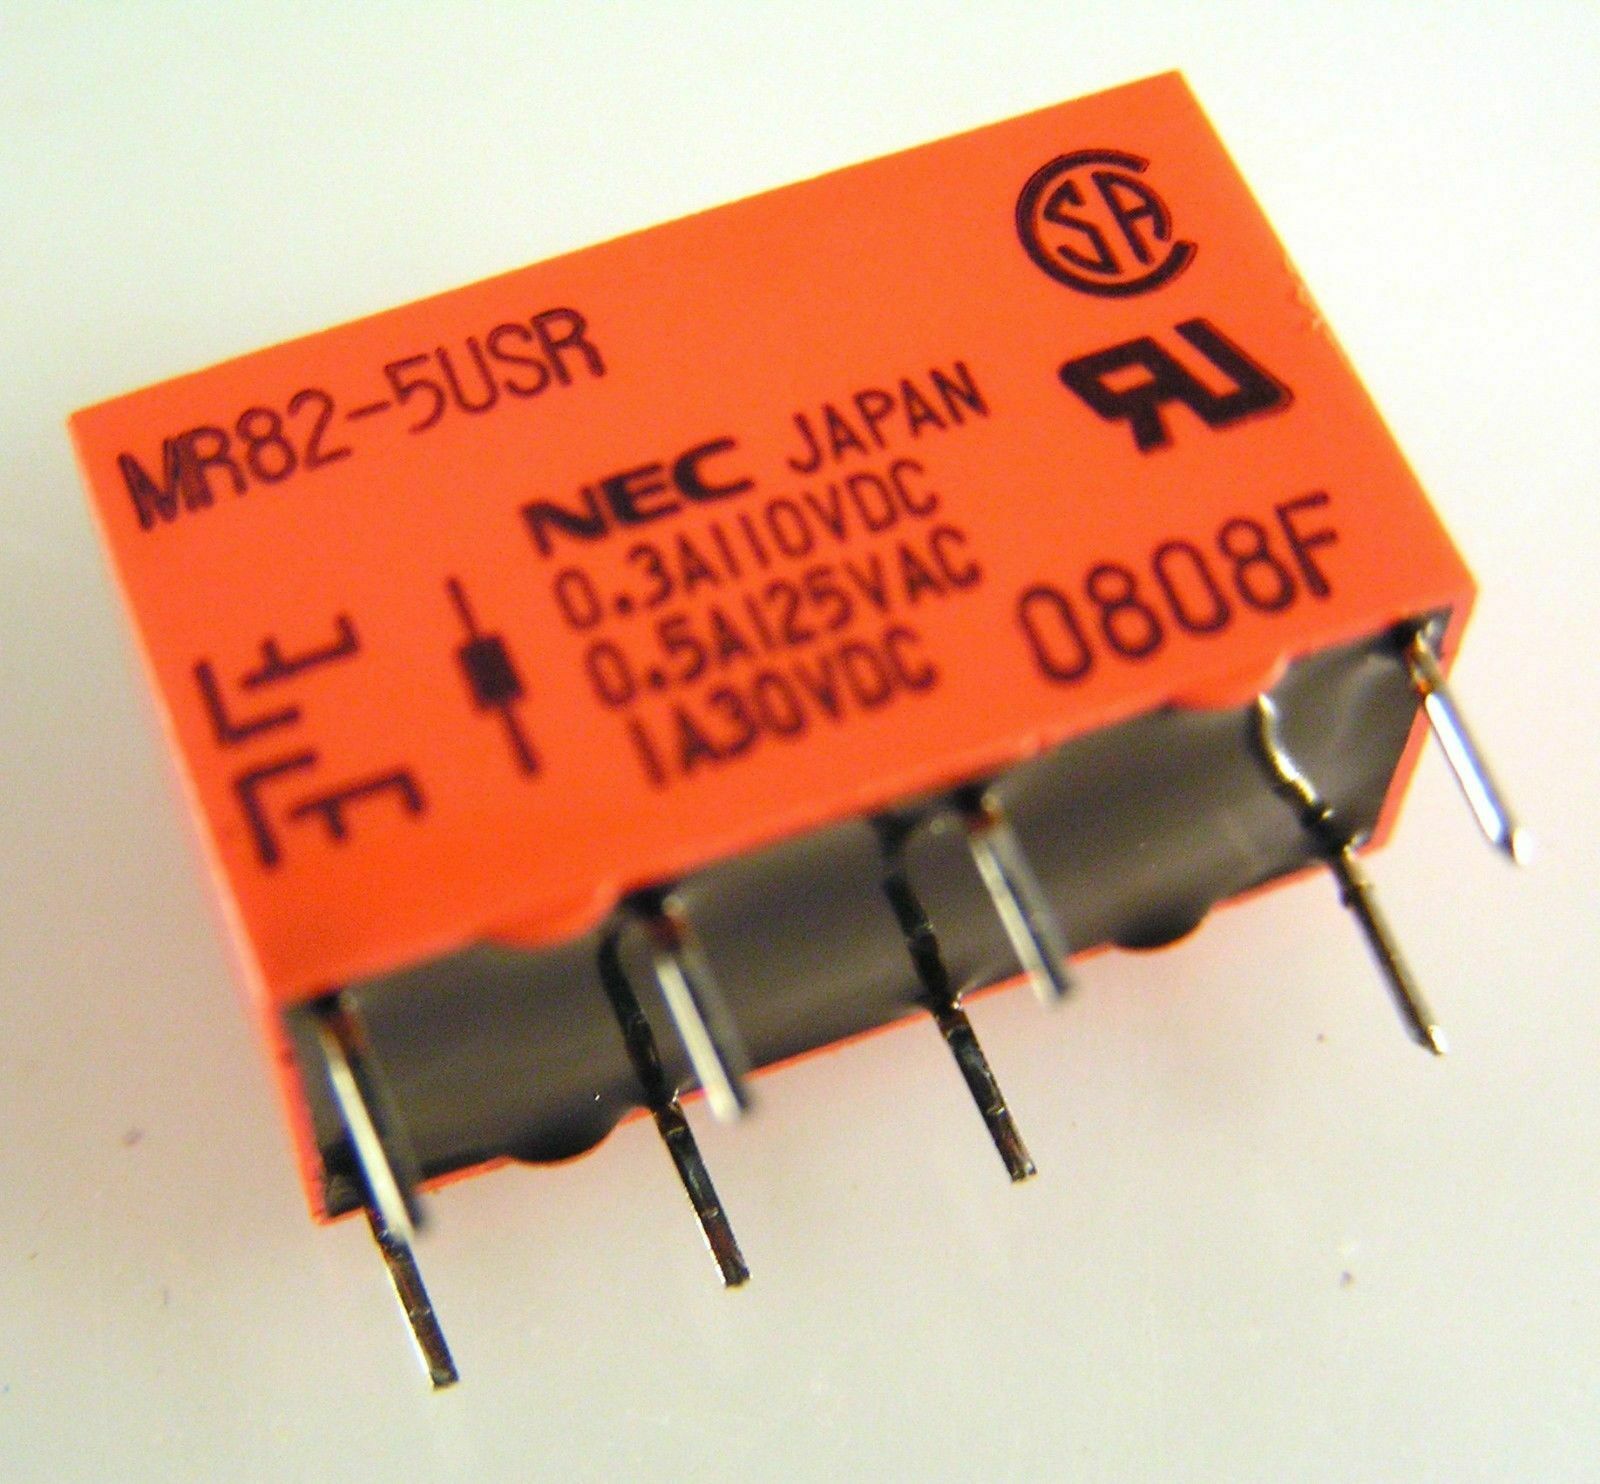 NEC MR82-5USR DIL Relay PCB Mount 5VDC Coil 1A 30VDC DPCO OLA1-07